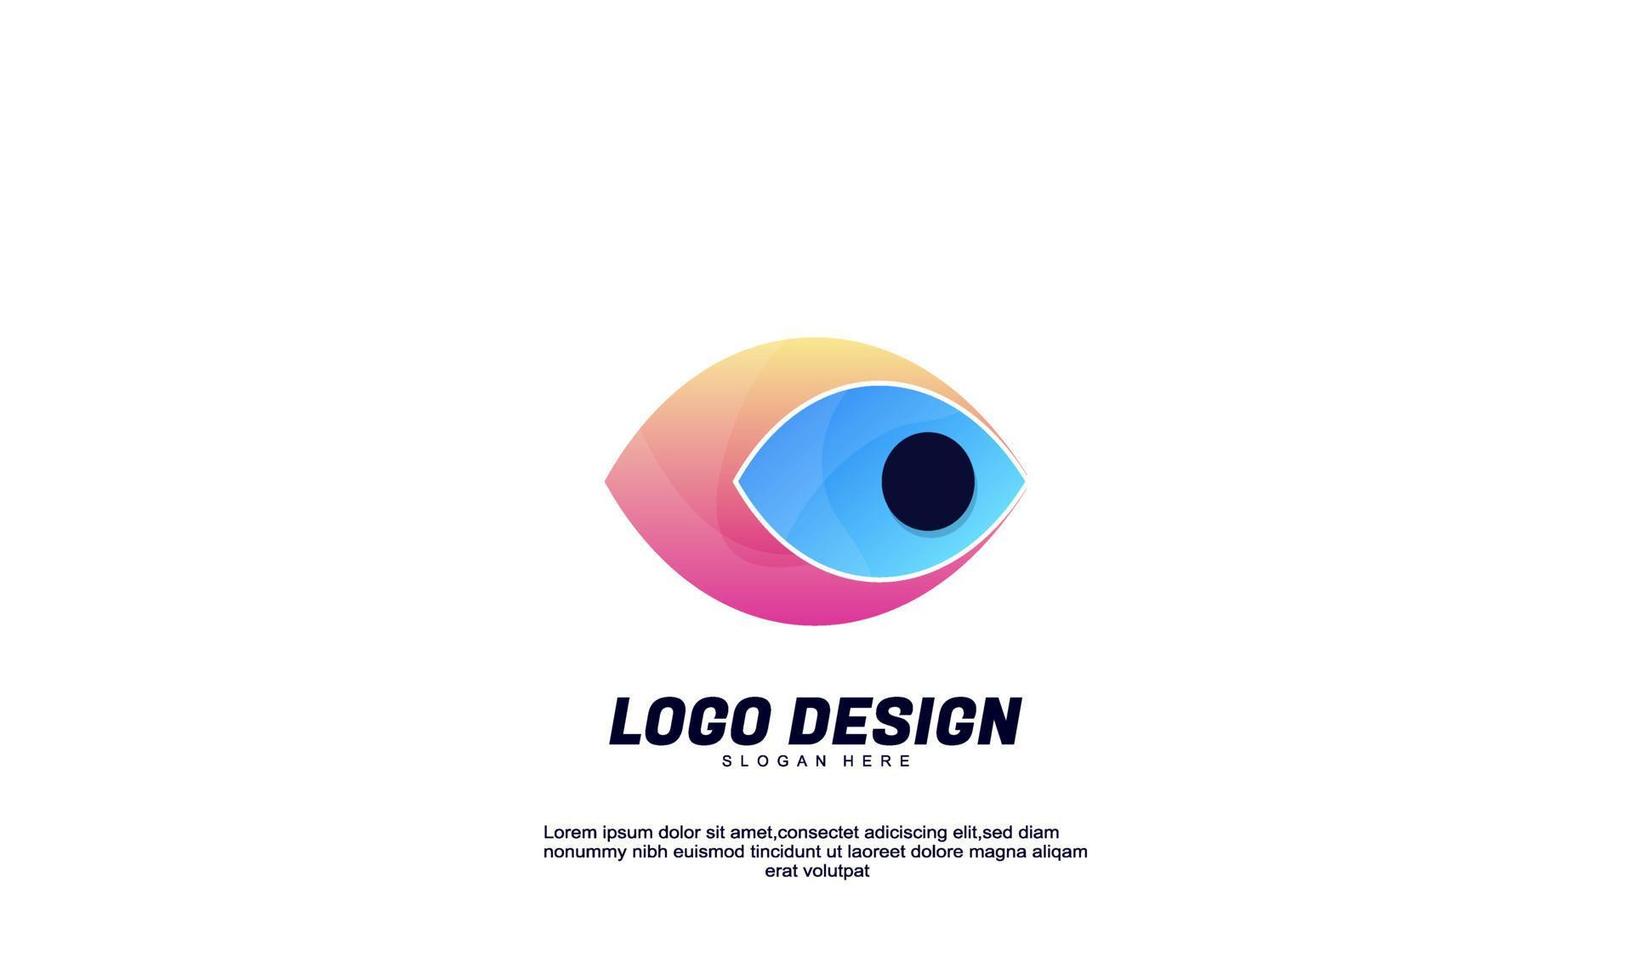 Stock Vektor abstrakte kreative Logo-Auge-Idee für Branding-Identitätsunternehmen oder Business-Farbverlauf-Design-Vorlage